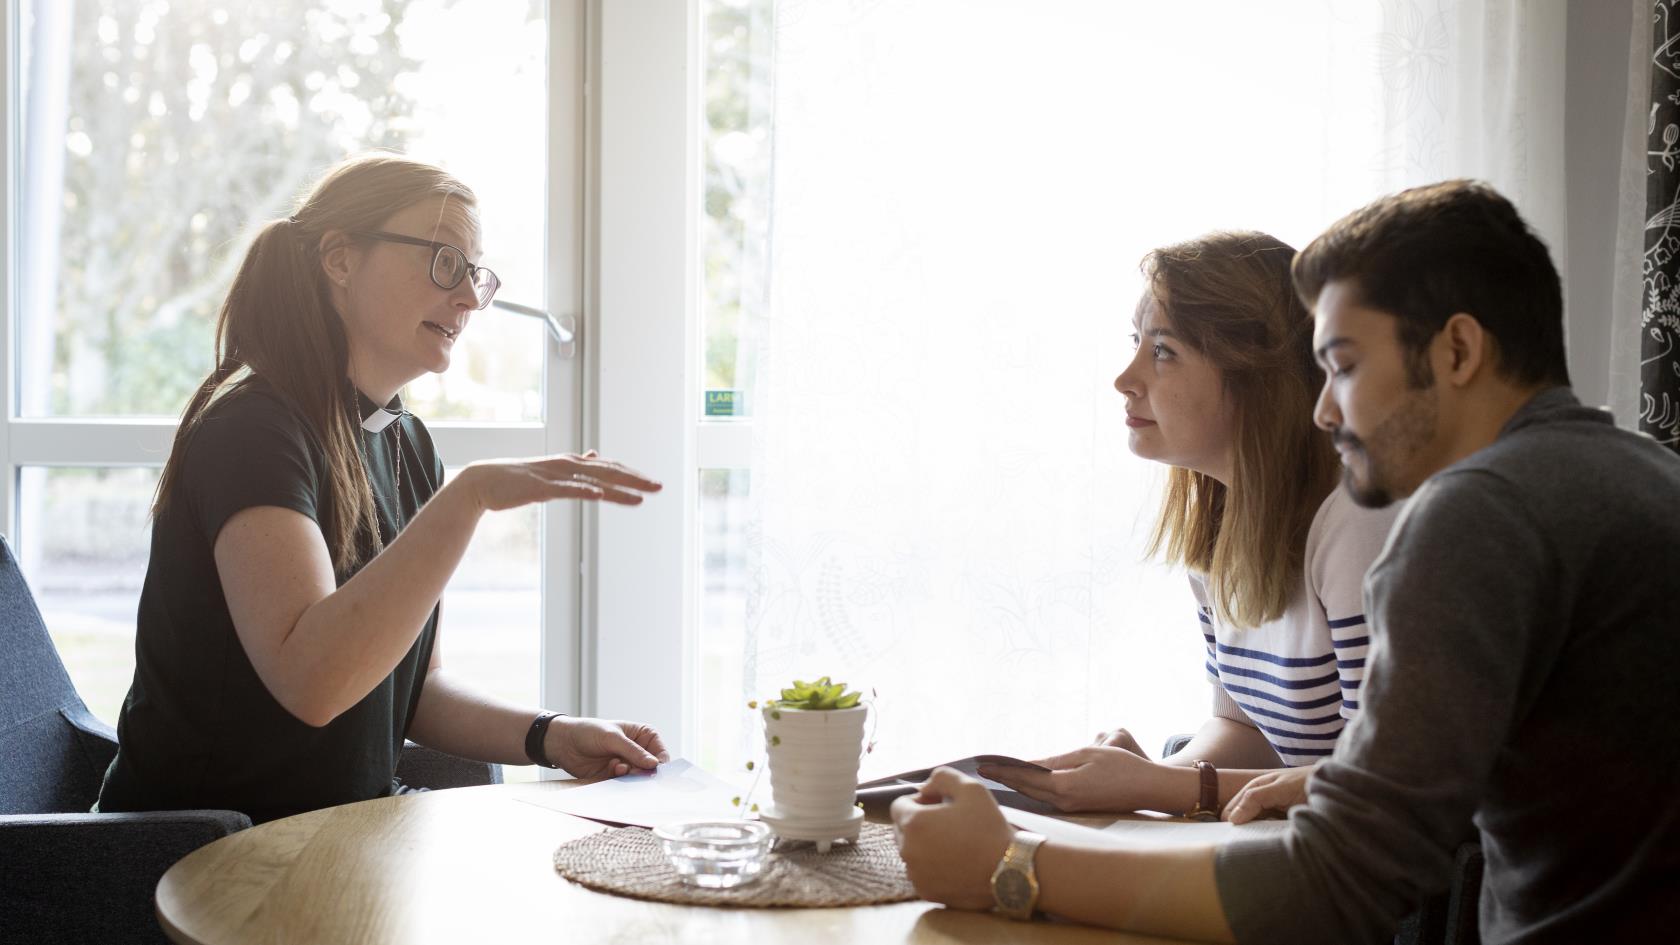 En kvinnlig diakon sitter och samtalar med en man och en kvinna.